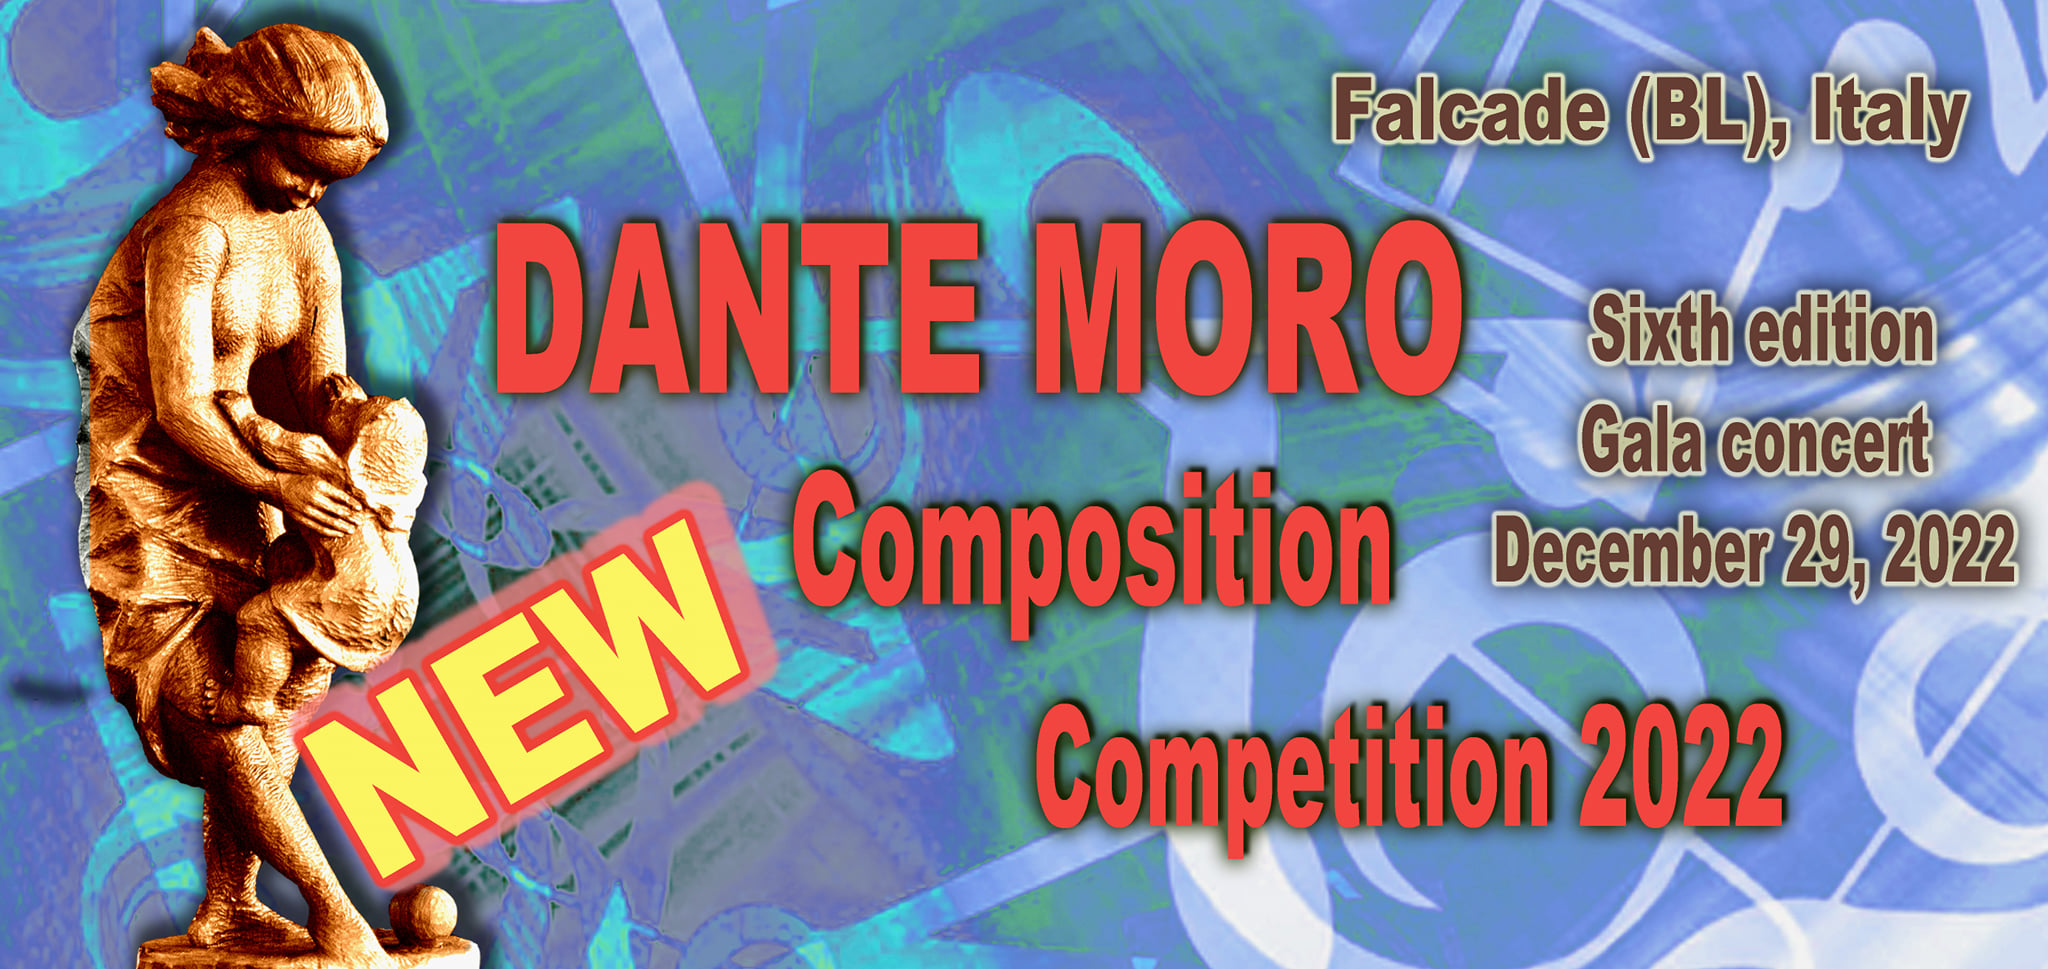 Dolomiti & Grande Musica. 
"Dante Moro" gala concert 2022